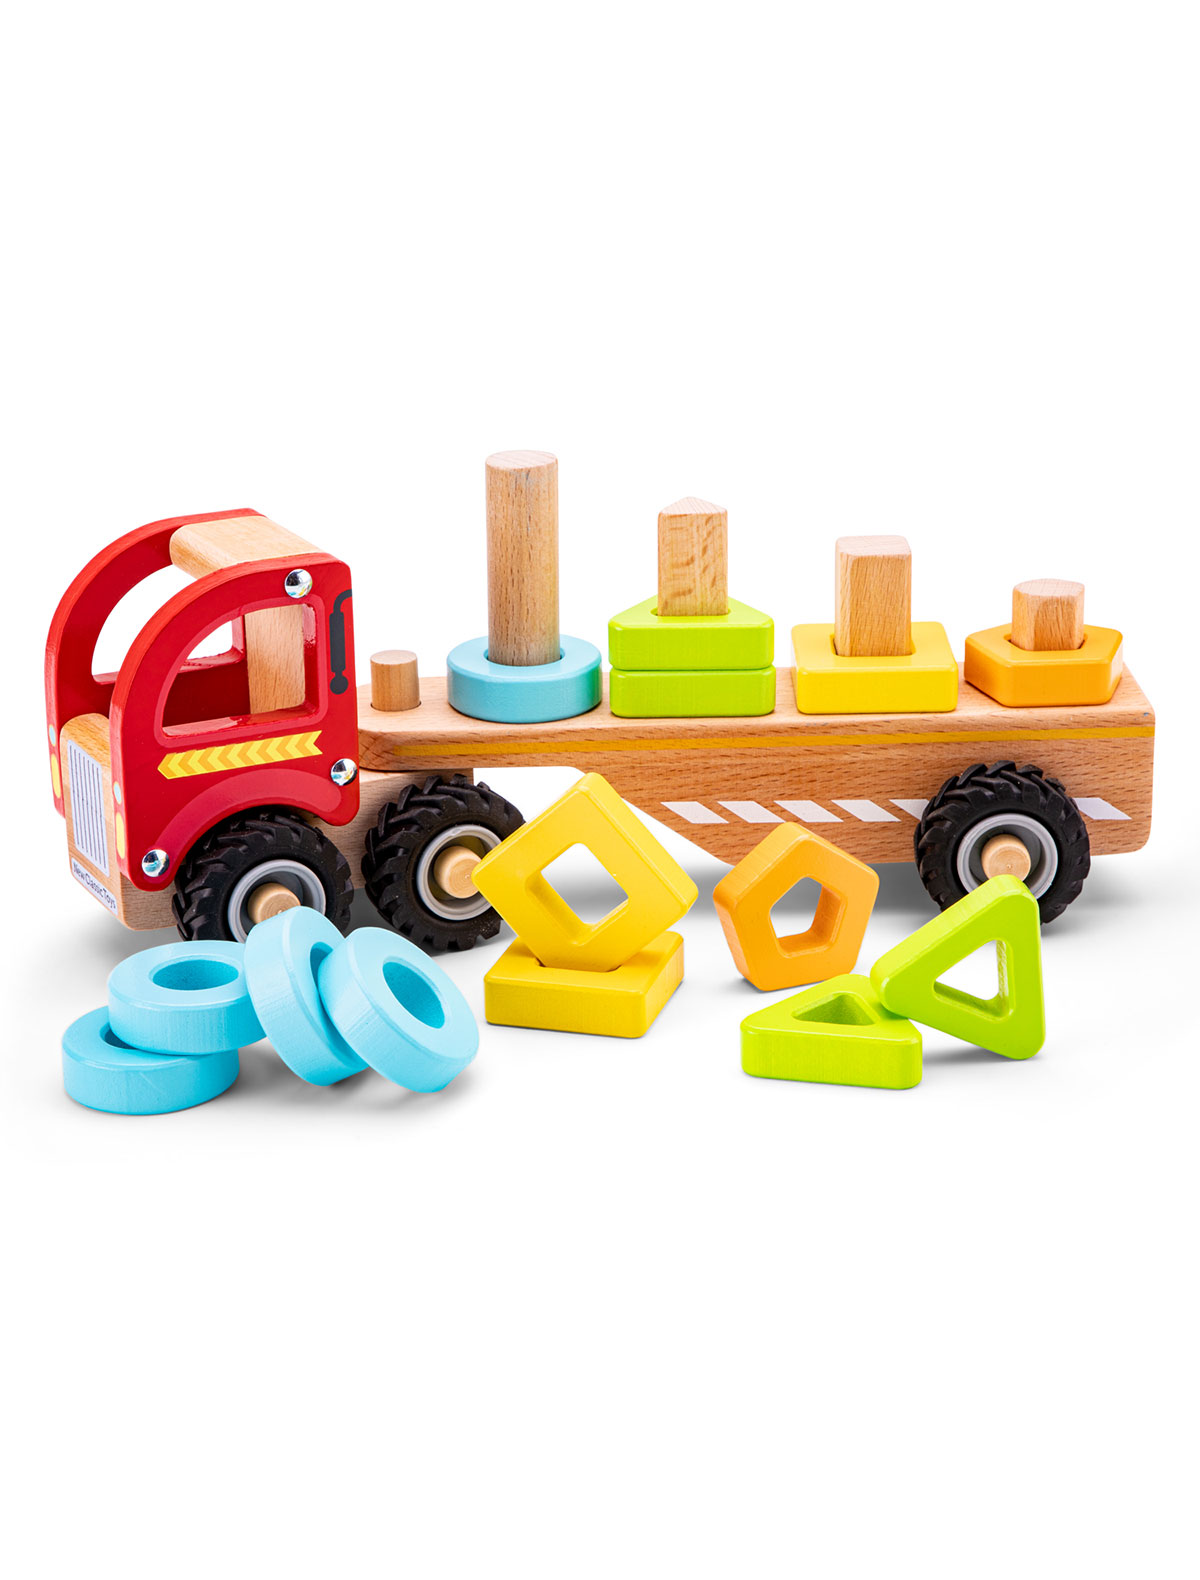 Игрушка развивающая New Classic Toys игрушка развивающая игрушка рамка вкладка раздвижная служебные машины